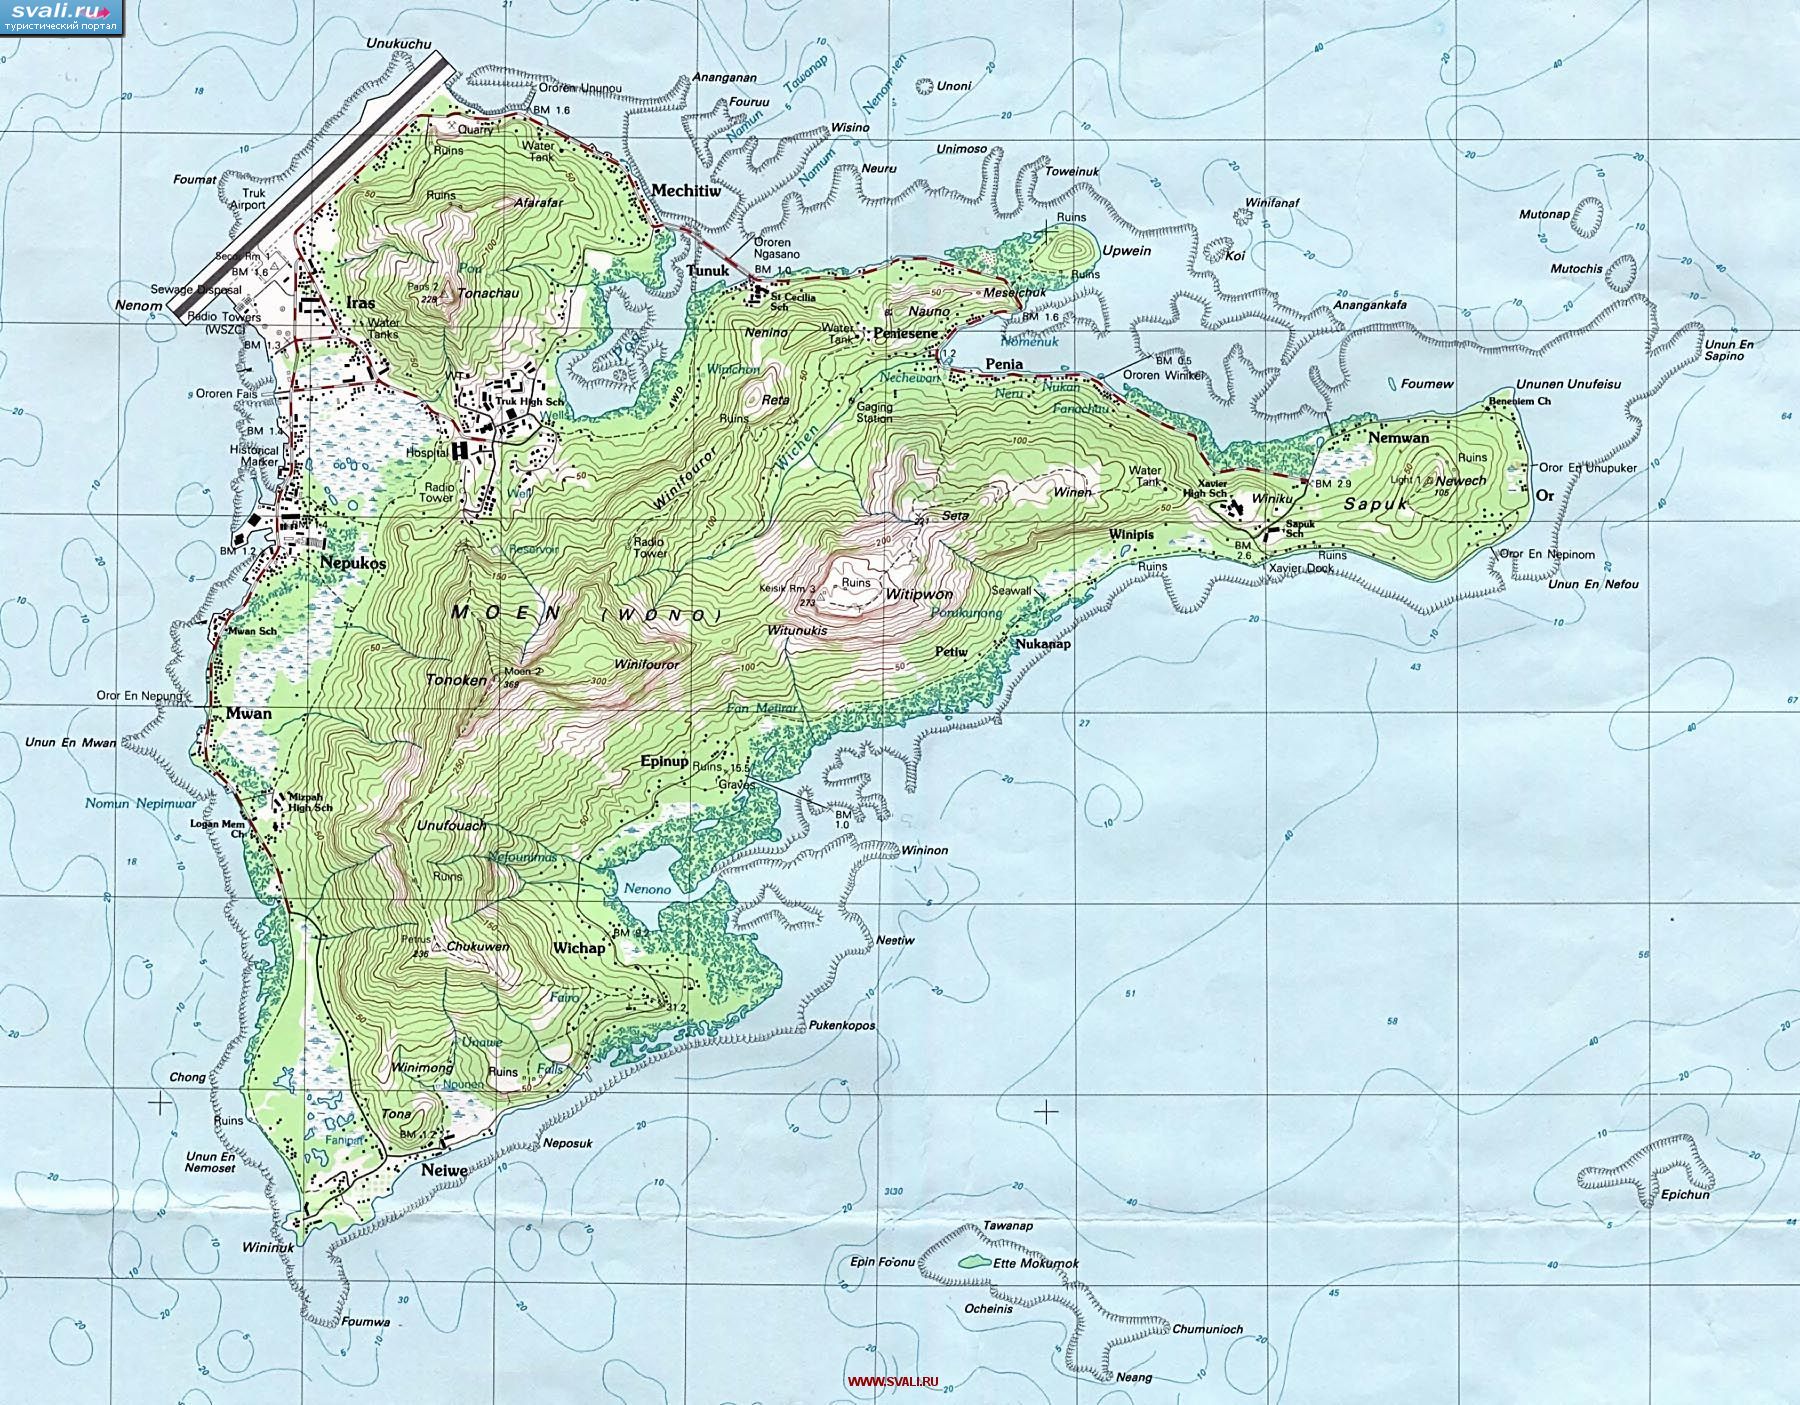 Топографическая карта острова Вено (Моен, Moen), лагуна Трук, штат Чуук, Федеративные Штаты Микронезии (англ.)